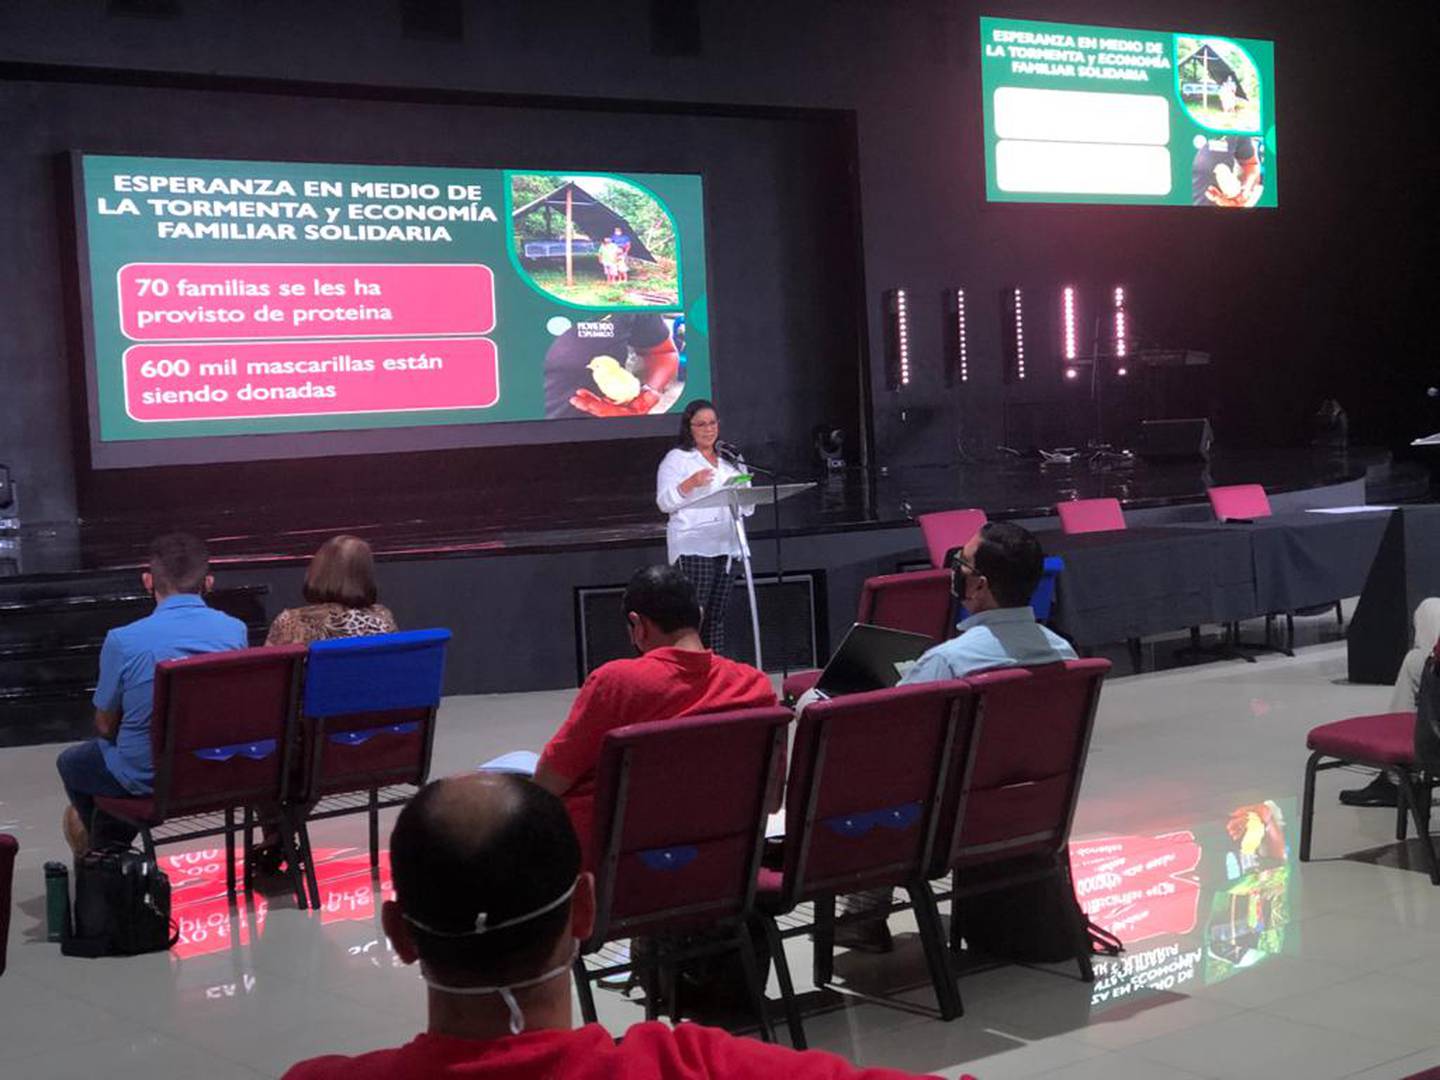 La Federación Alianza Evangélica Costarricense (FAEC) realizó la presentación de las Comisiones Ministeriales en las instalaciones de la Iglesia Visión de Impacto en Desamparados, el pasado miércoles 9 de junio.